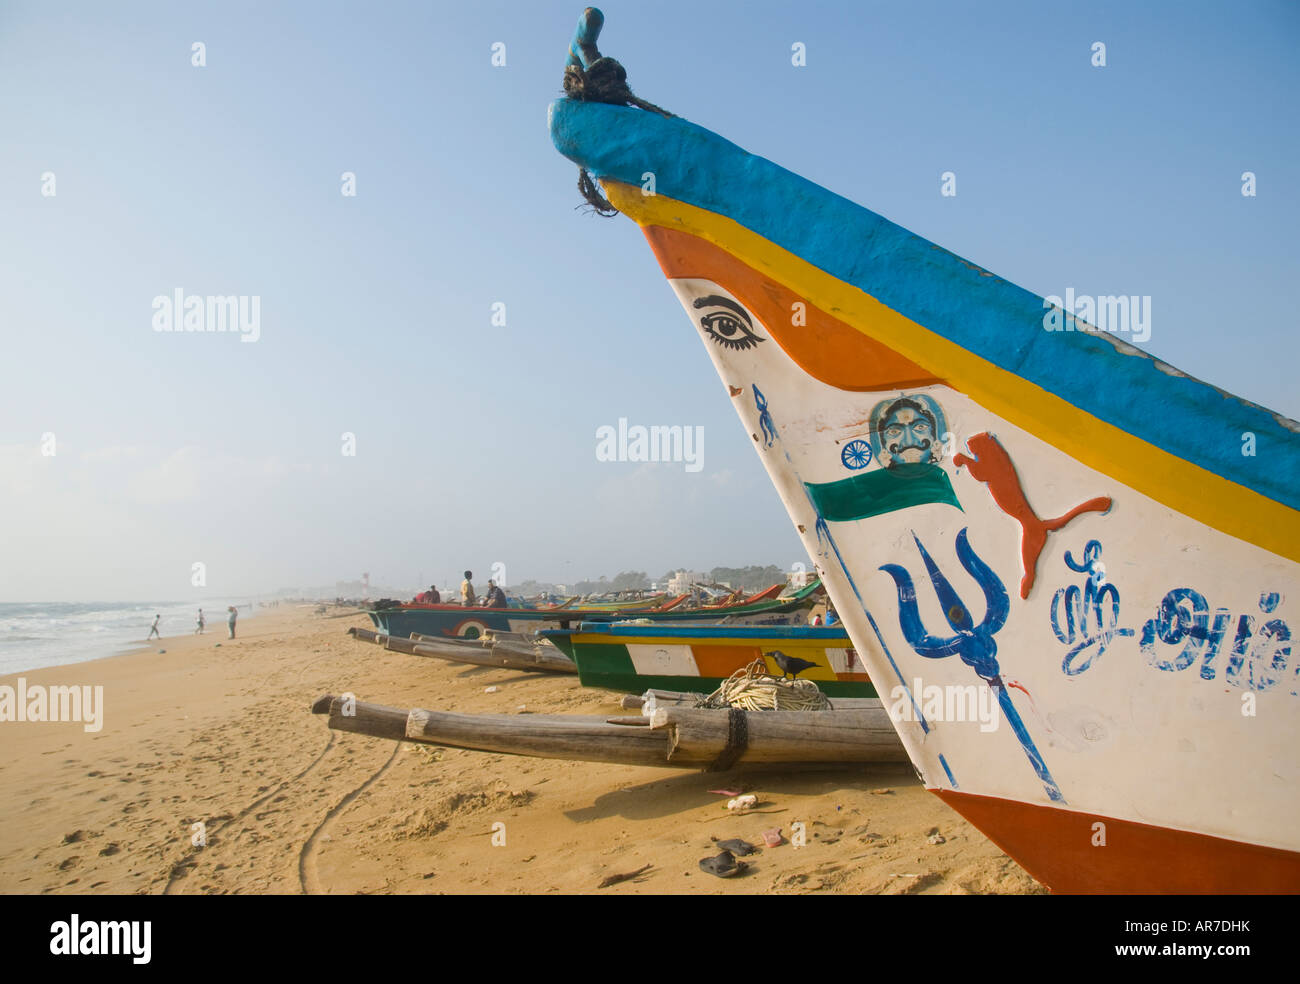 A fishing boat on Marina beach in Chennai Tamil Nadu India Stock Photo